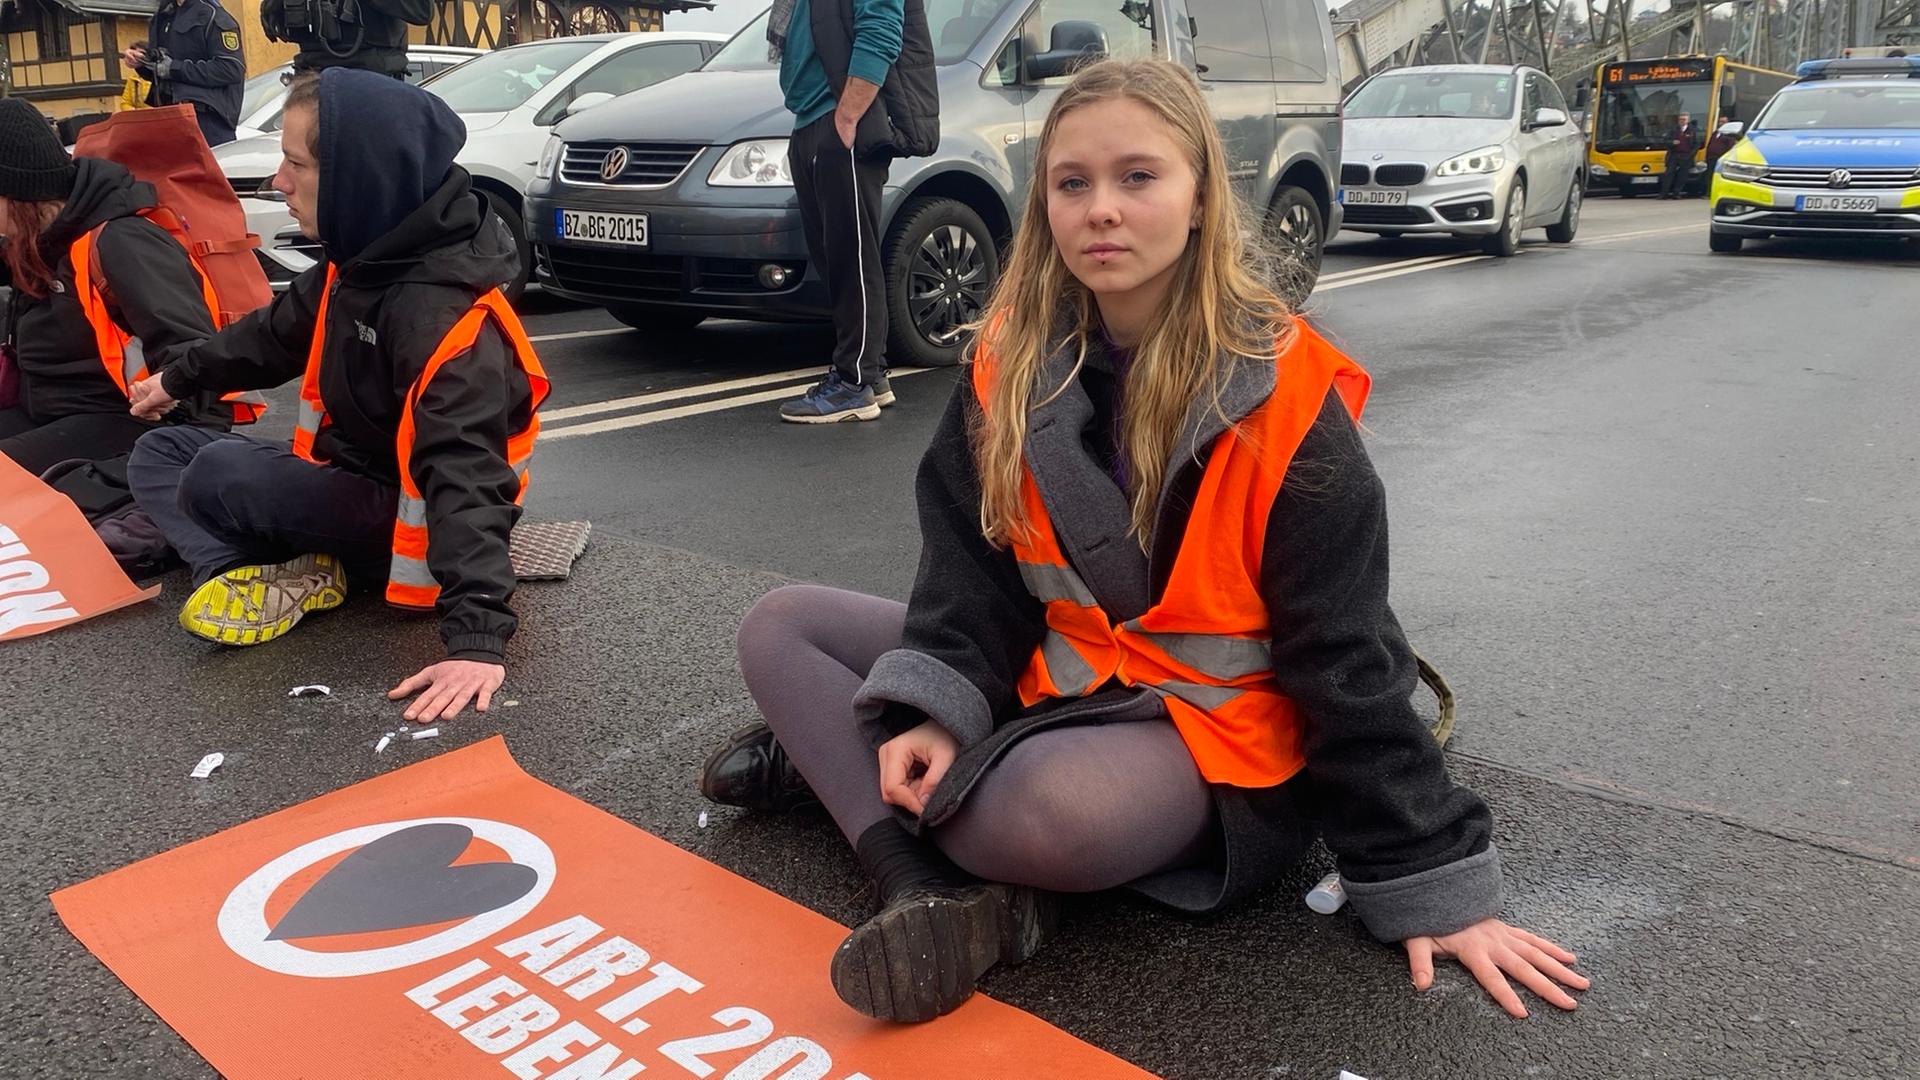 Aimée van Baalen, festgeklebt auf der Strasse, Aktivistin der "Letzten Generation".